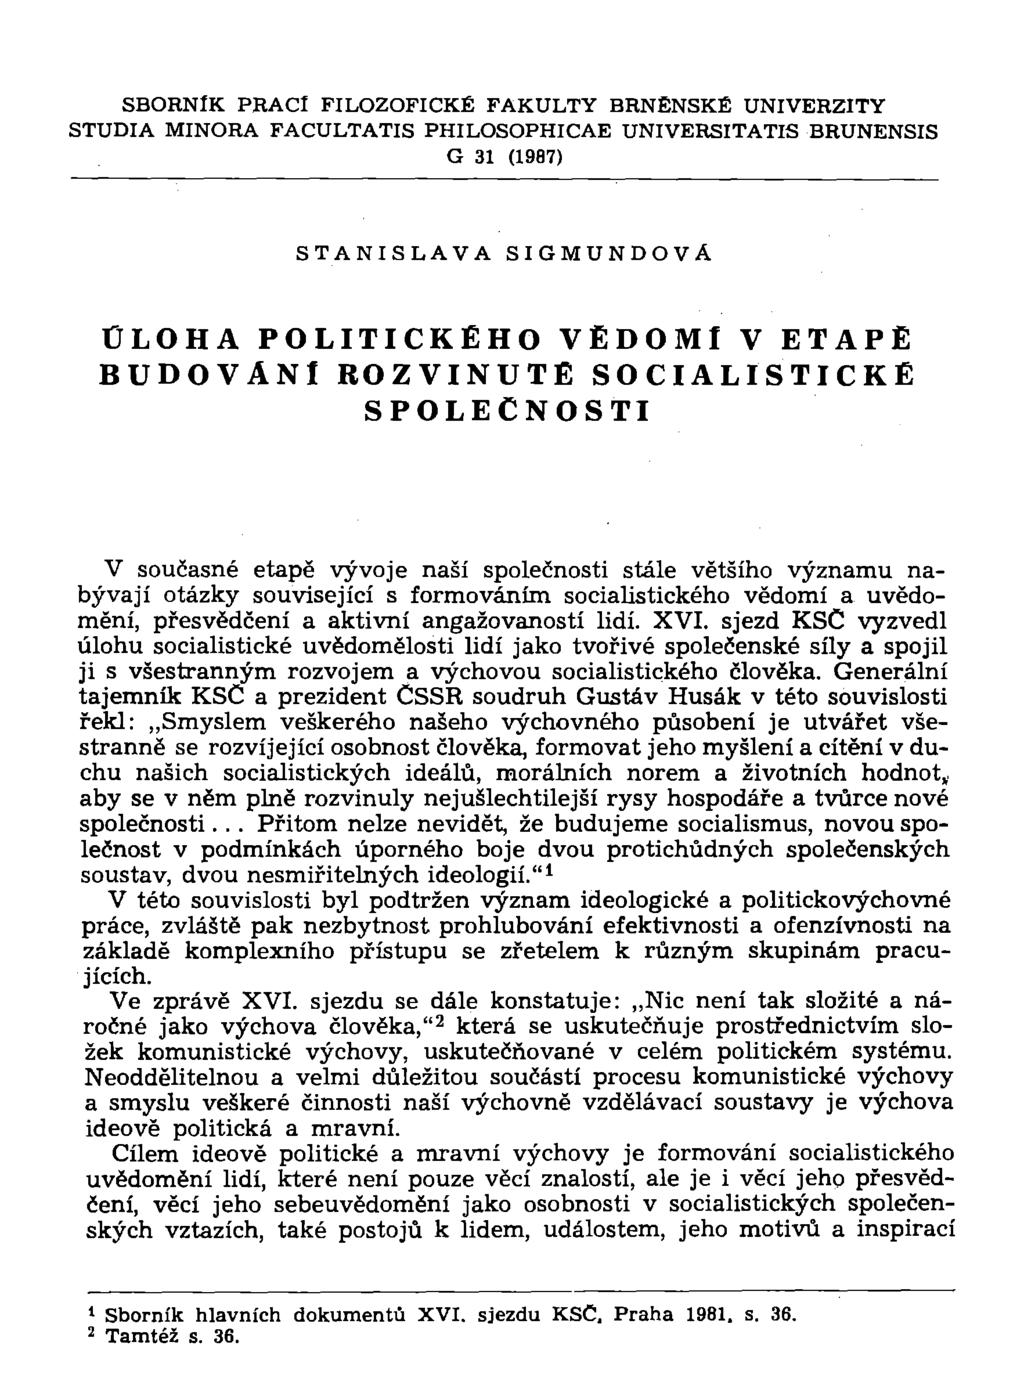 SBORNÍK PRACÍ FILOZOFICKÉ FAKULTY BRNĚNSKÉ UNIVERZITY STUDIA MINORA FACULTATIS PHILOSOPHICAE UNIVERSITATIS BRUNENSIS G 31 (1987) STANISLAVA SIGMUNDOVÁ ÚLOHA POLITICKÉHO VĚDOMI V ETAPÉ BUDOVANÍ